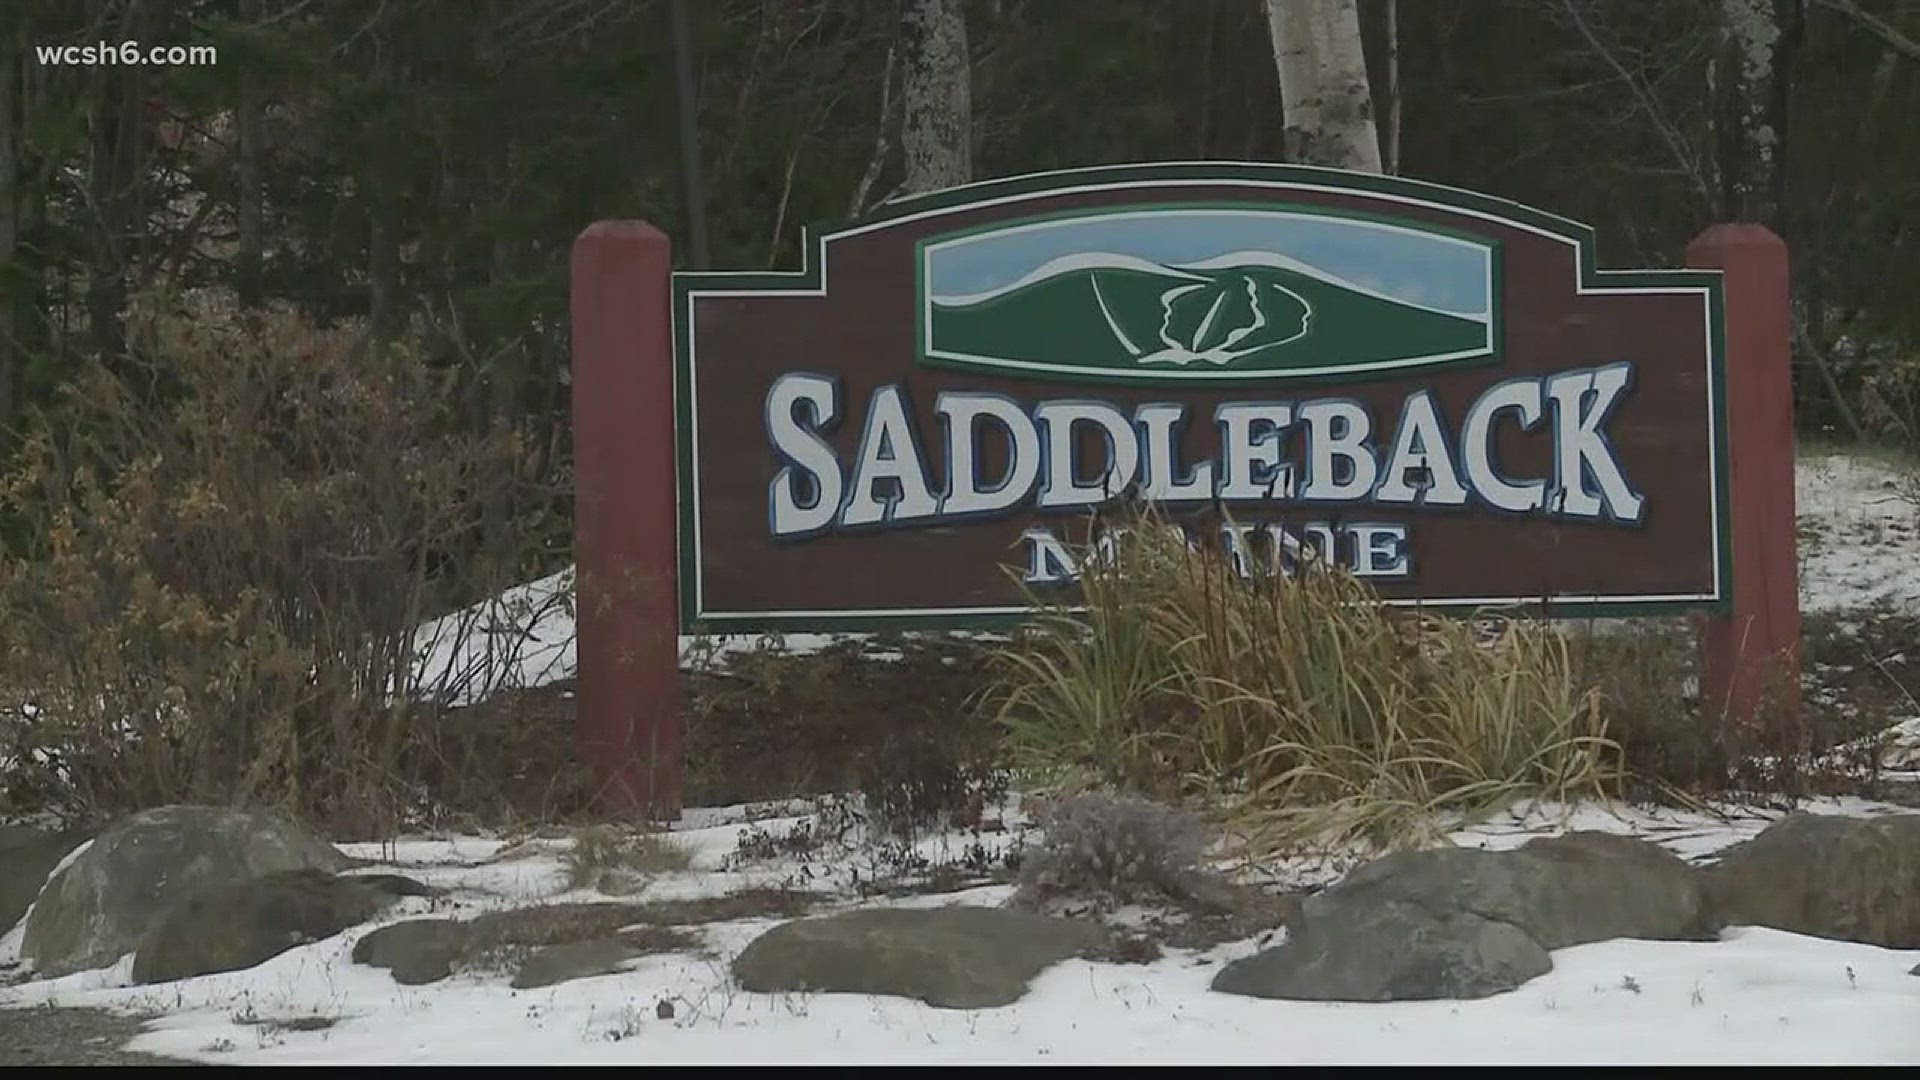 NOW: Rangeley struggles with Saddleback closed